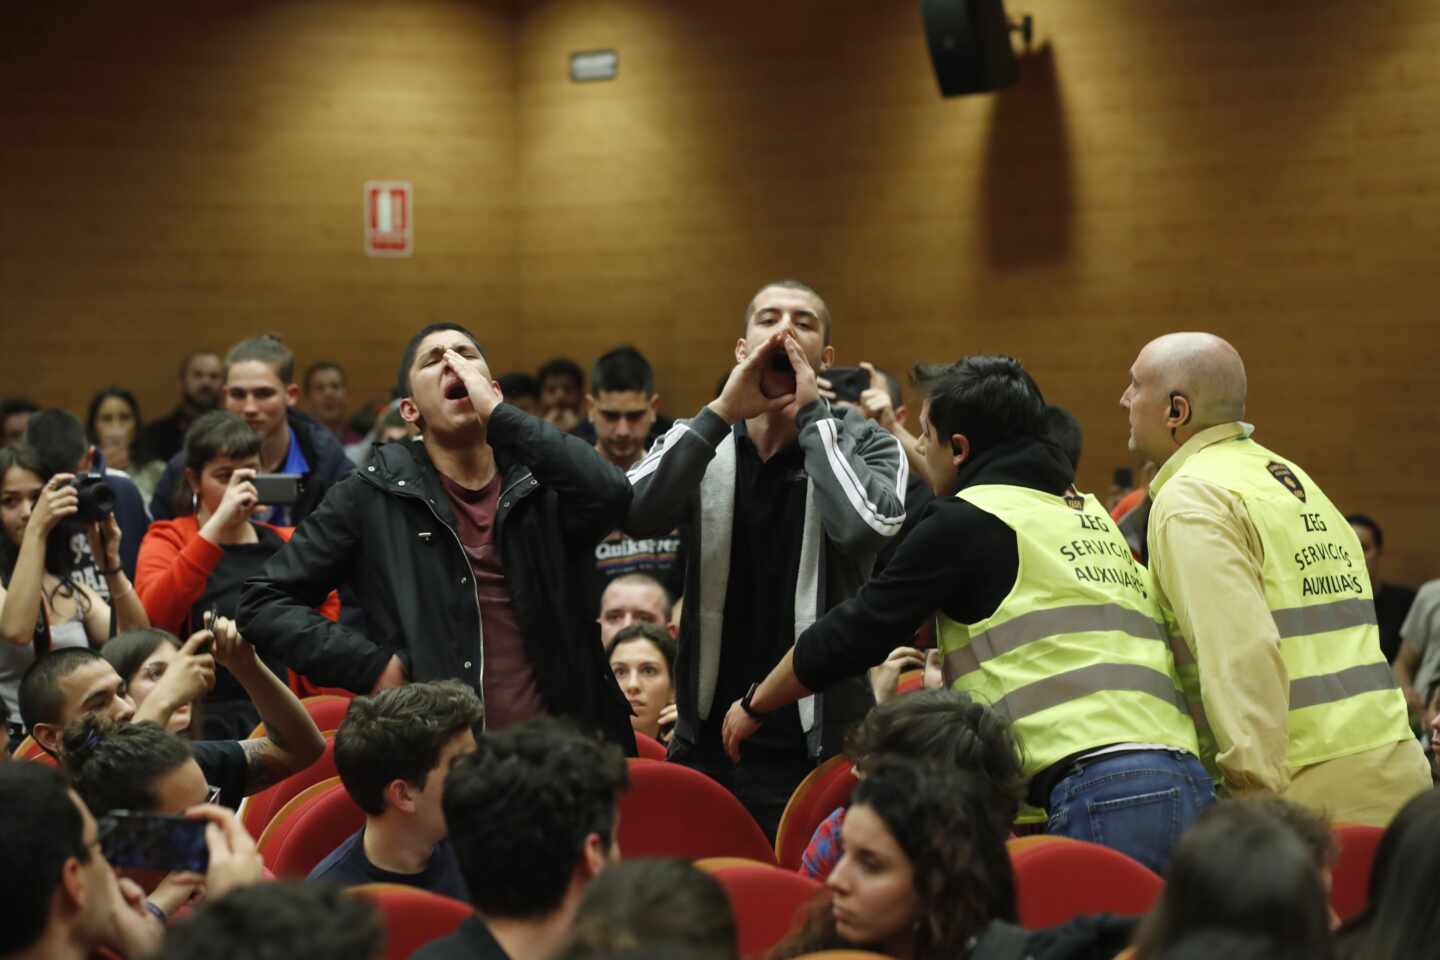 Escrache a Pablo Iglesias en el campus de Somosaguas: "Fuera vendeobreros de la universidad"